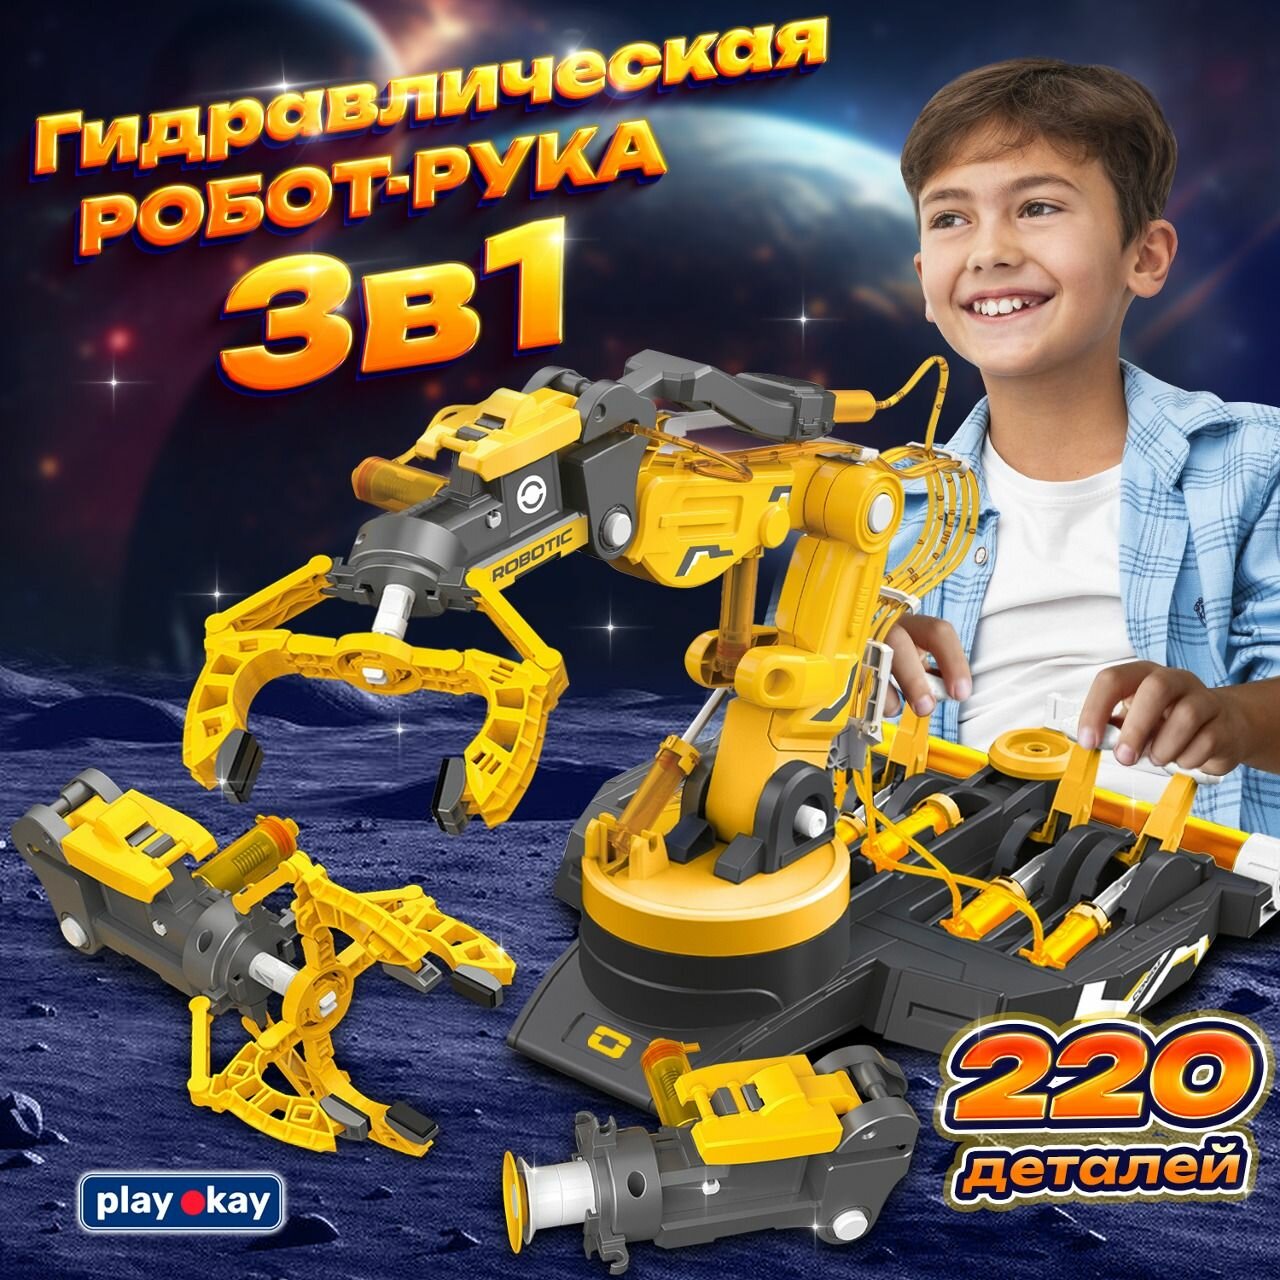 Конструктор робототехники Play Okay 3 в 1 Гидравлическая рука манипулятор для опытов мальчиков, 220 деталей, желтый